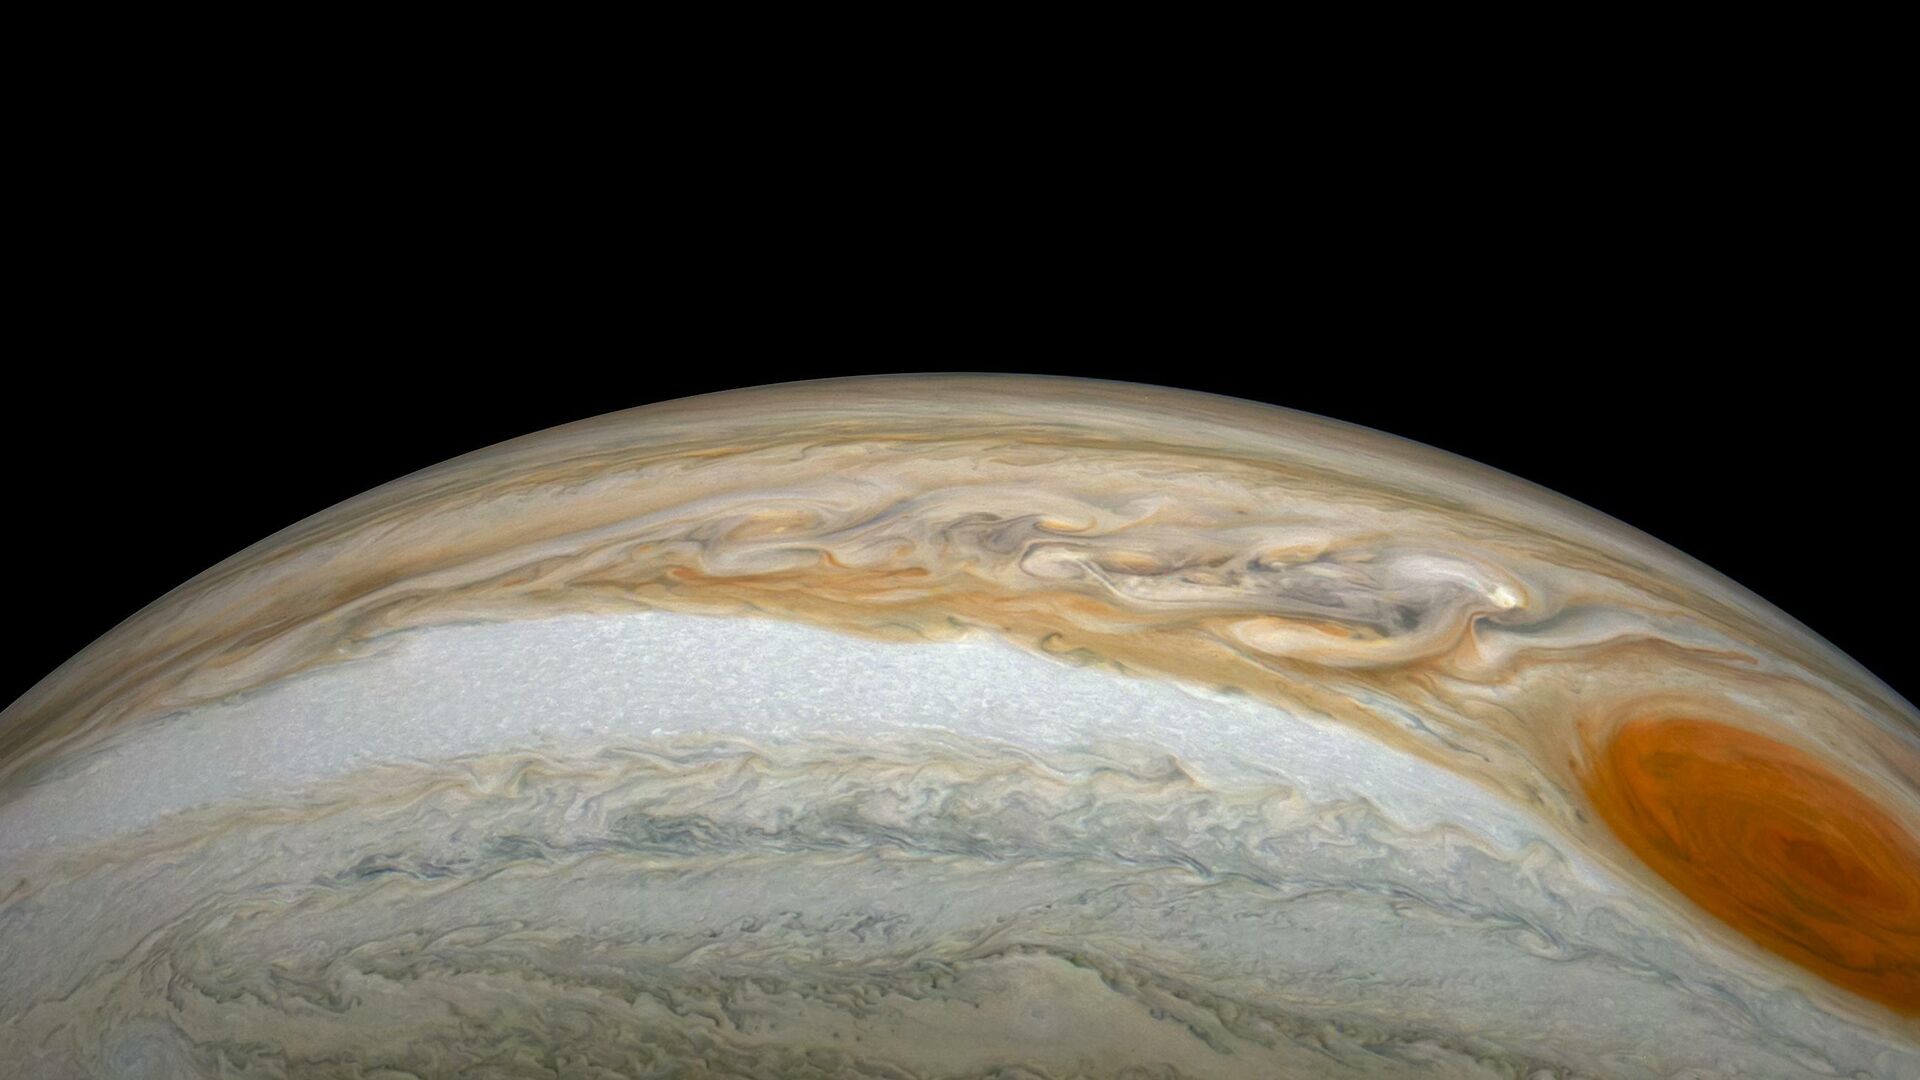 Снимок Юпитера Юнона